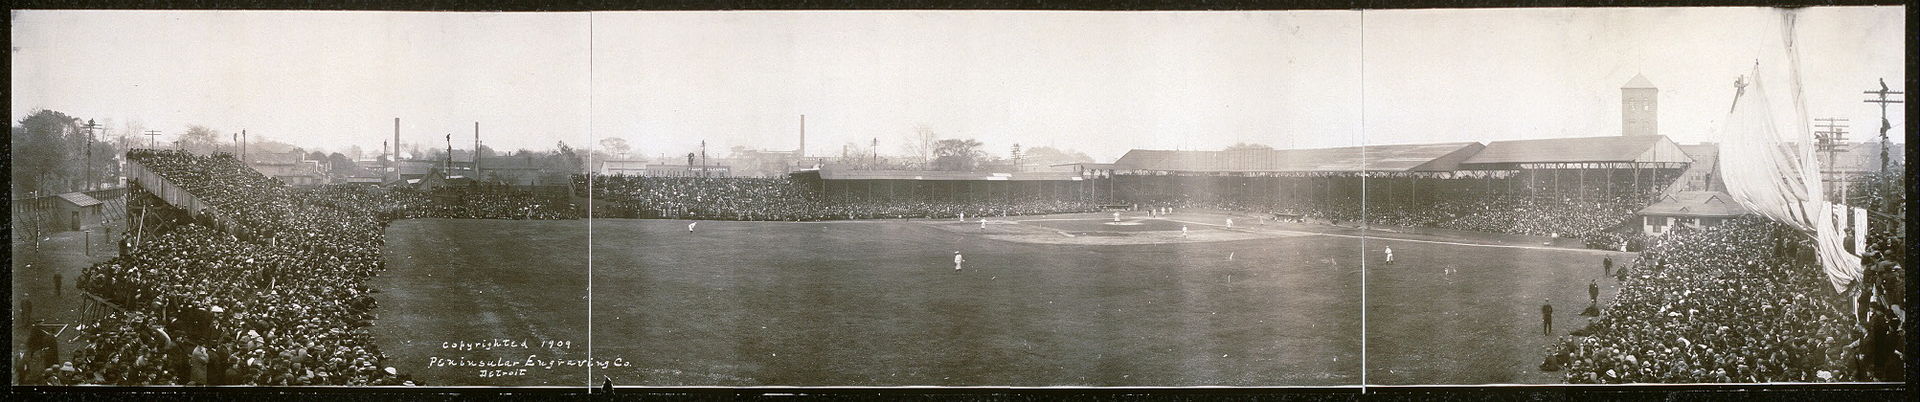 Bennet Park 1909 World Series